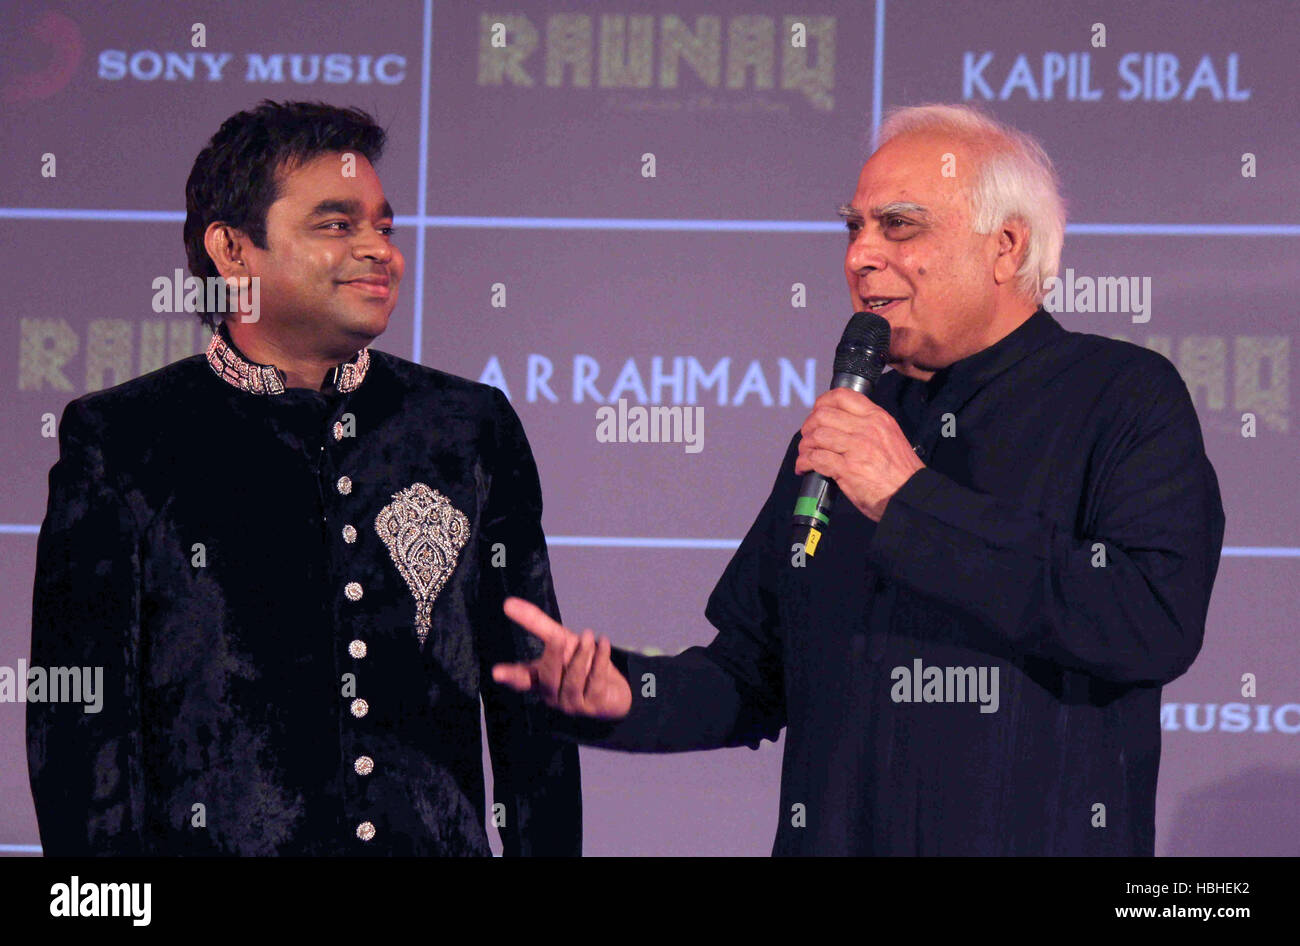 Bollywood A R Rahman Kapil Sibal during the launch of their music album Raunaq in Mumbai Stock Photo